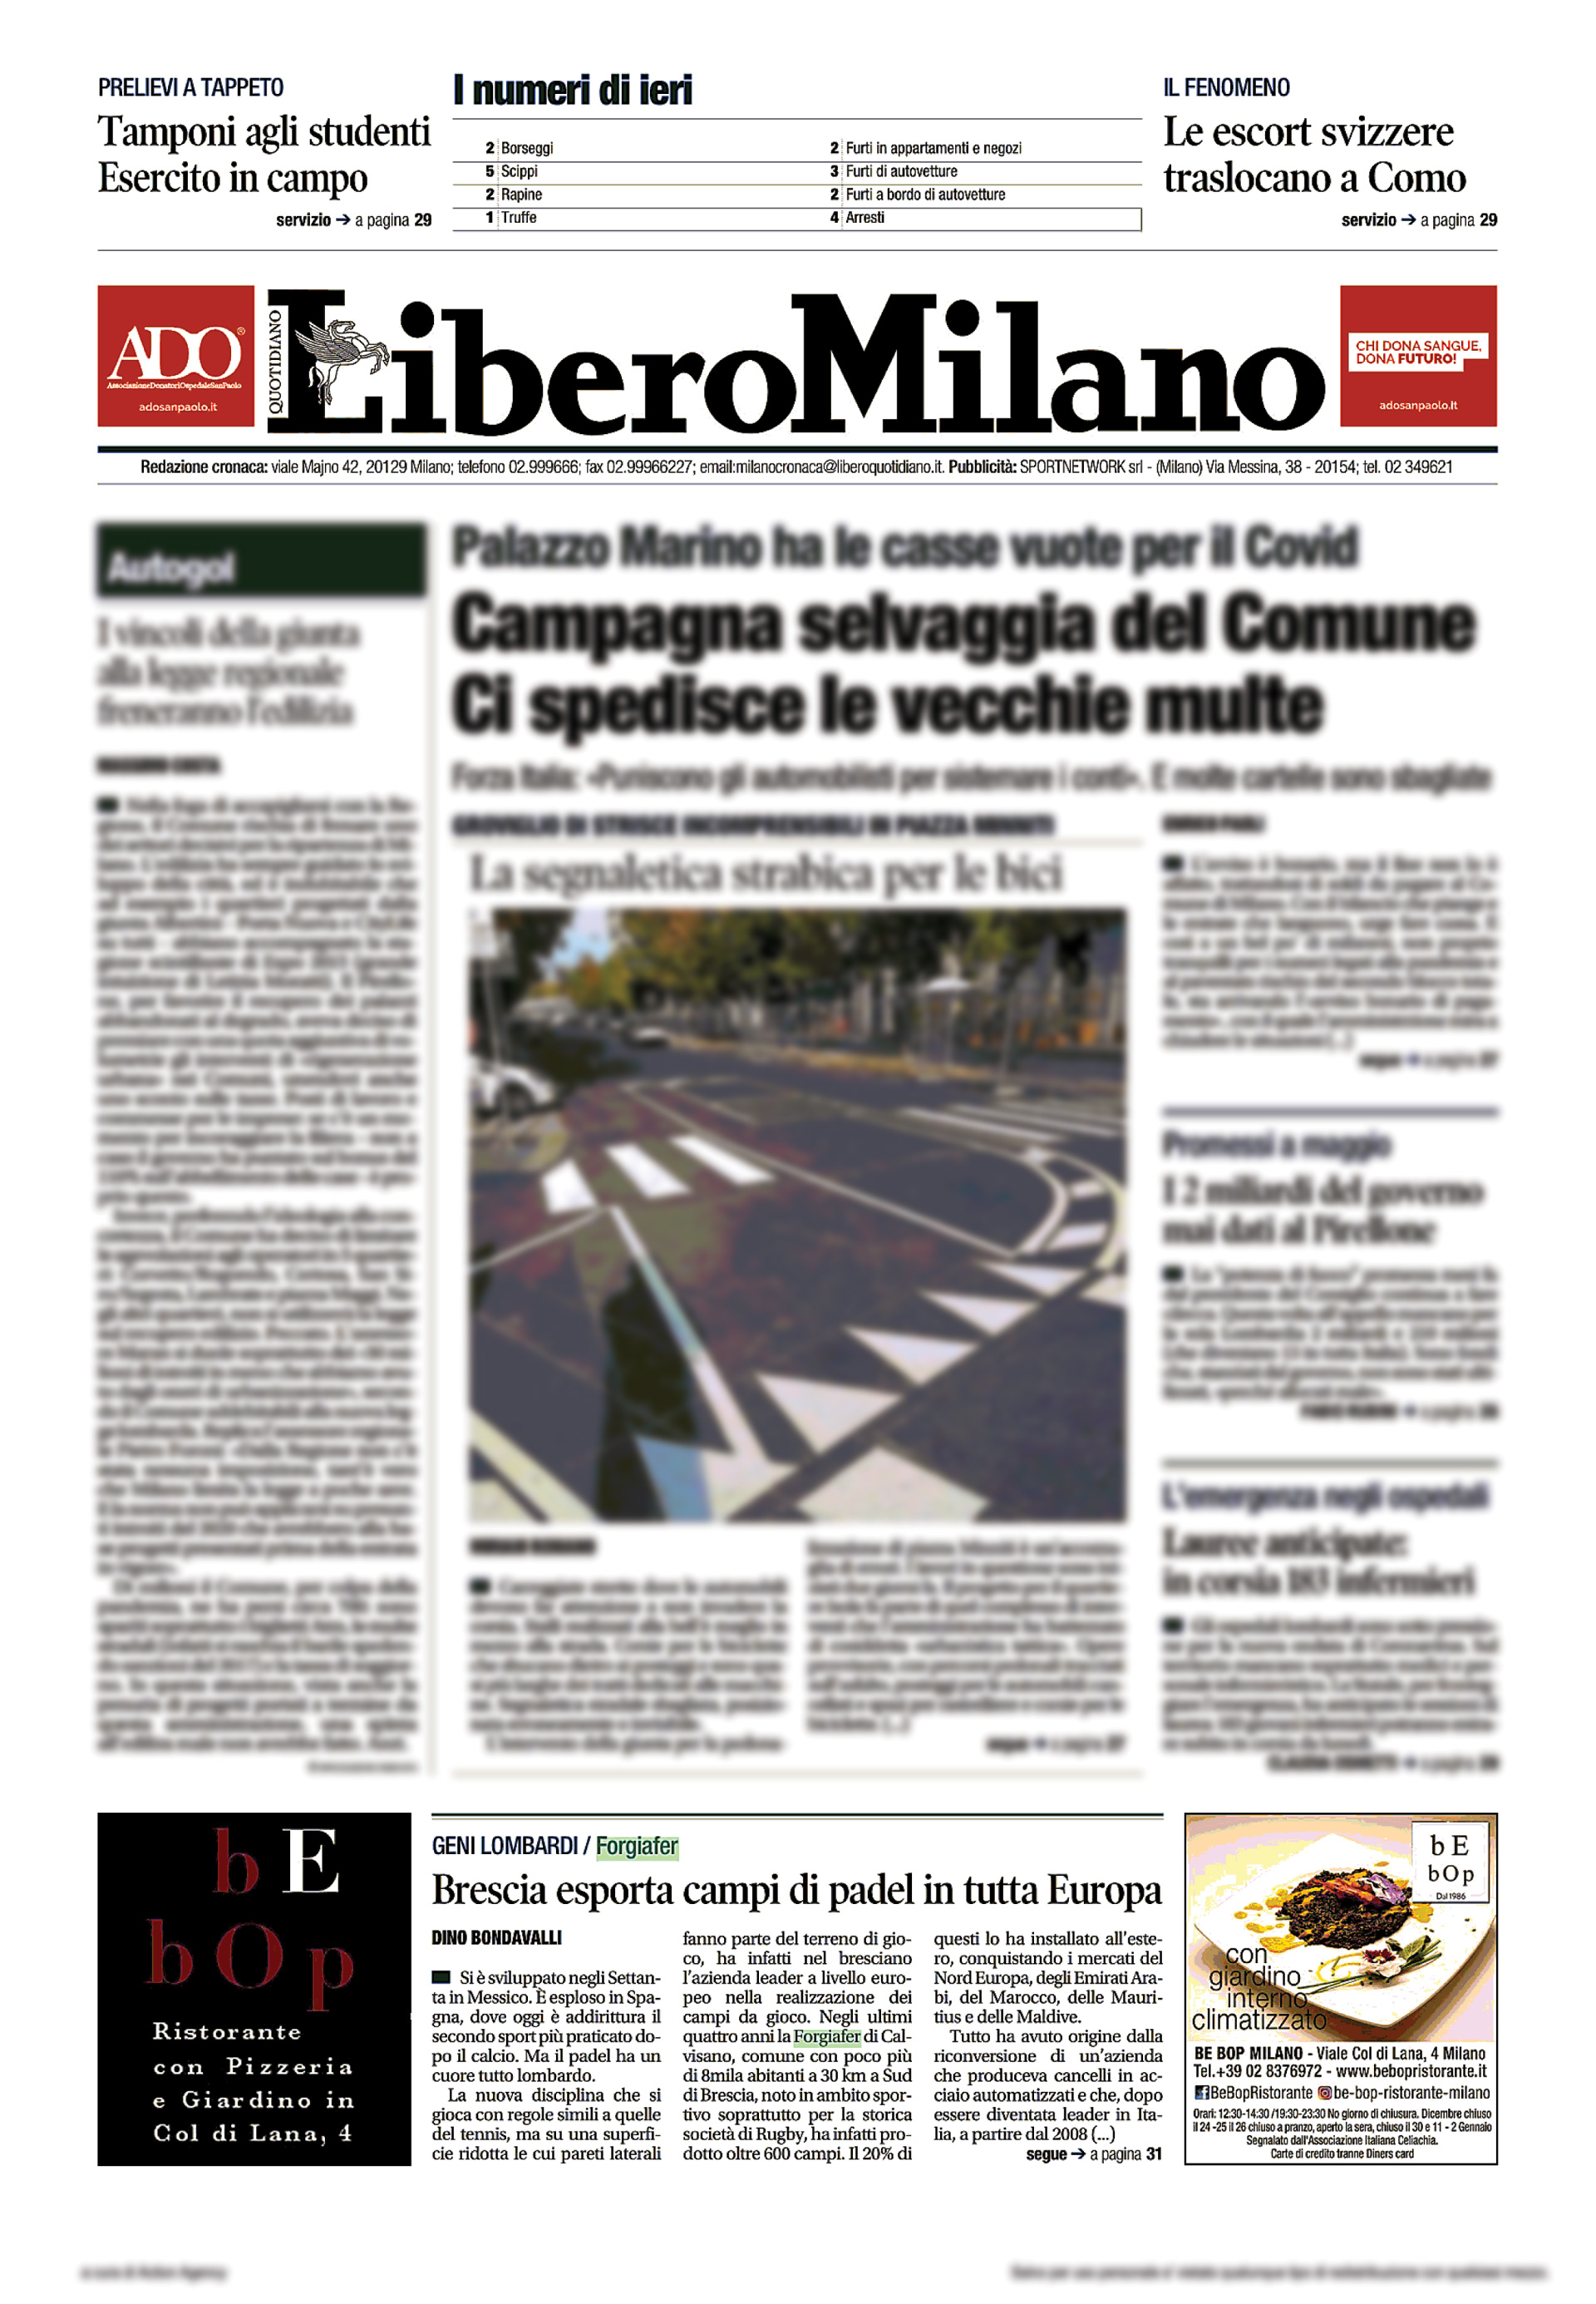 Articolo 31 Ottobre 2020 - Libero (ed.Nazionale, ed. Milano) pag. 25 e 31